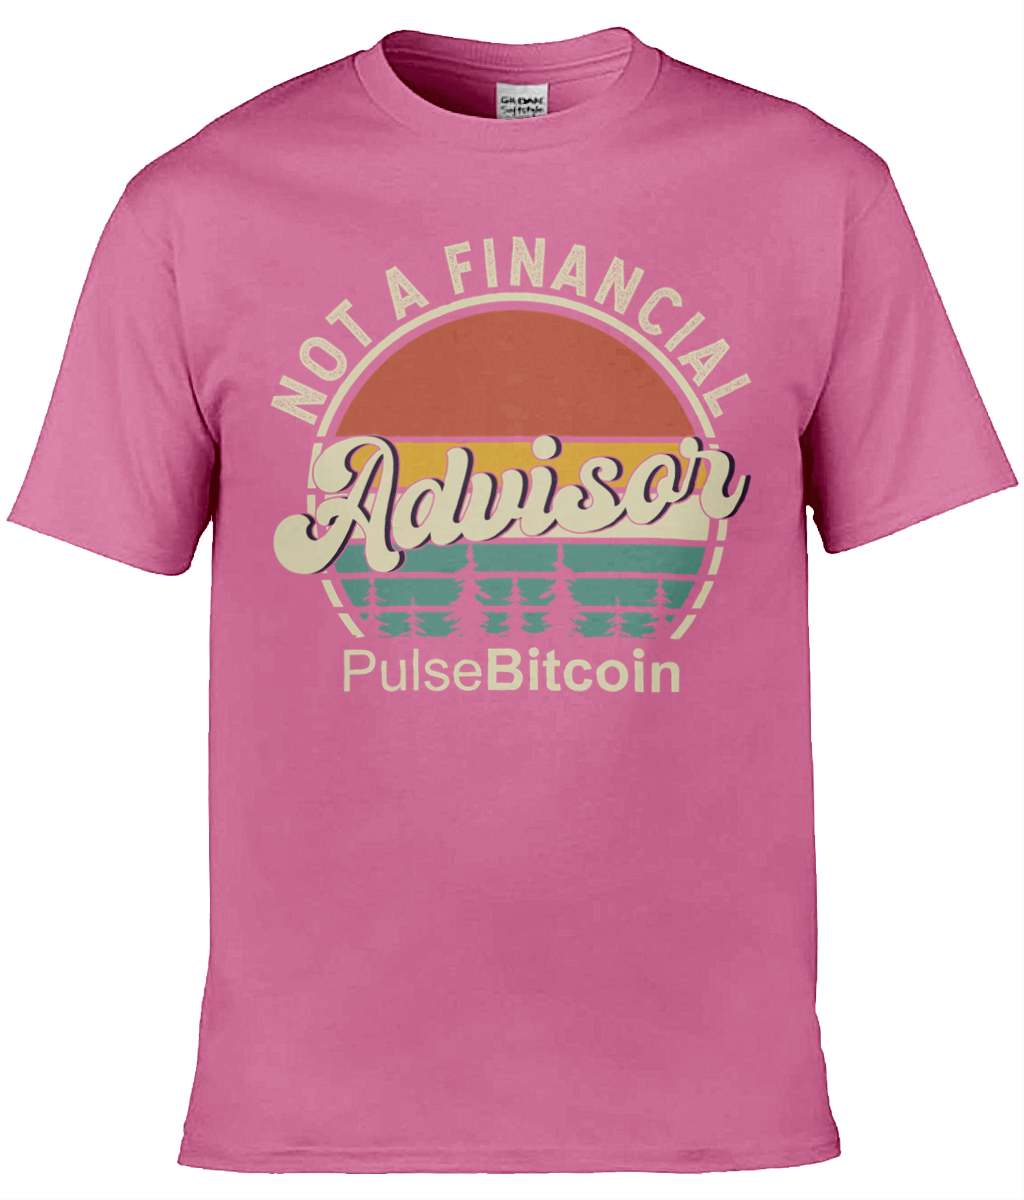 Not a Financial Advisor T-shirt, PulseBitcoin Unisex T-shirt